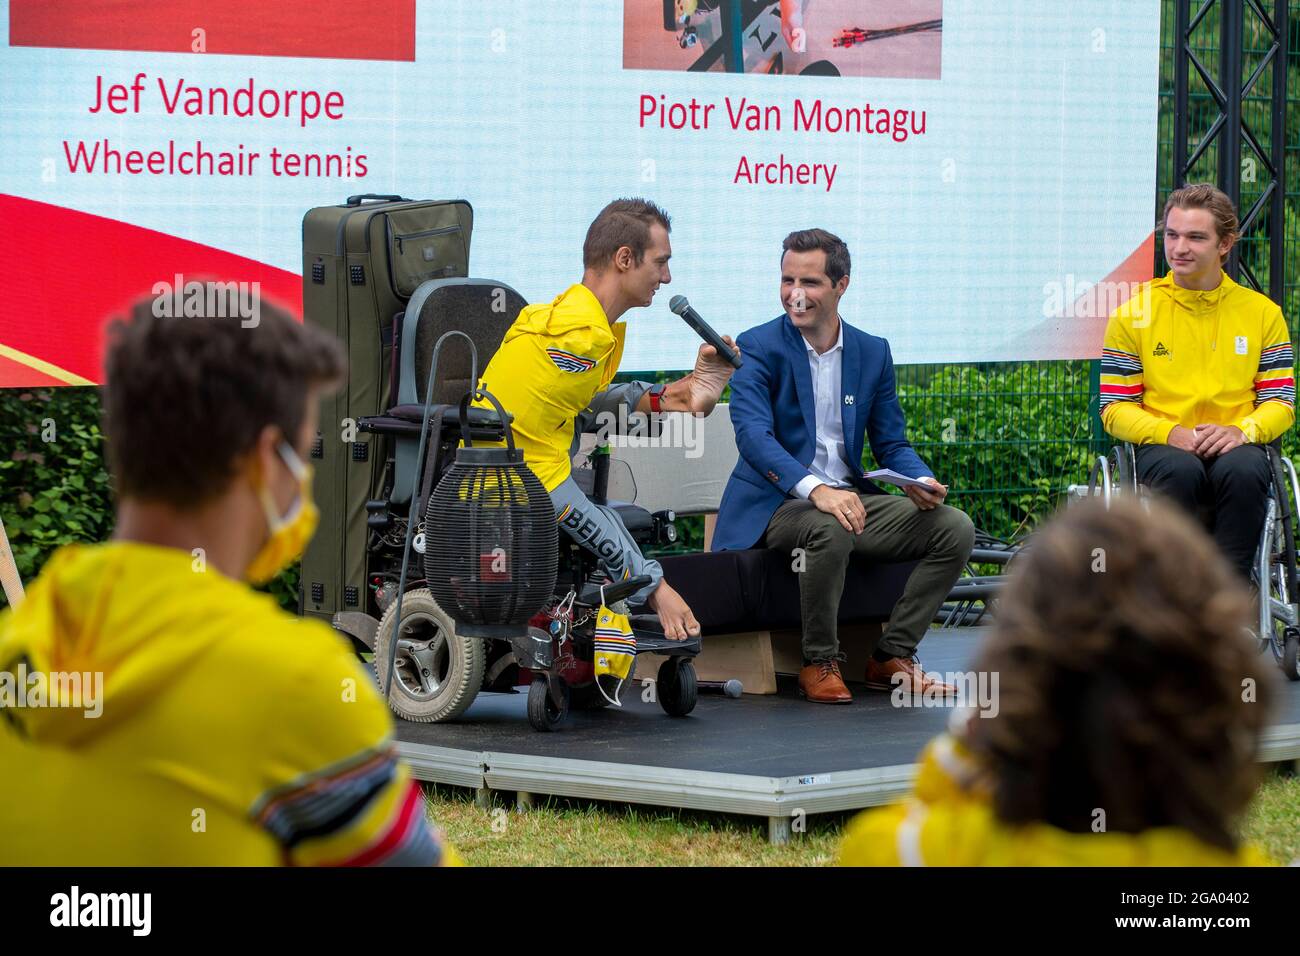 Piotr Van Montagu (L) und der Paralympische Rollstuhltennisspieler Jef Vandorpe (R) im Bild während einer Pressekonferenz des Paralympischen Teams Belgien, ah Stockfoto